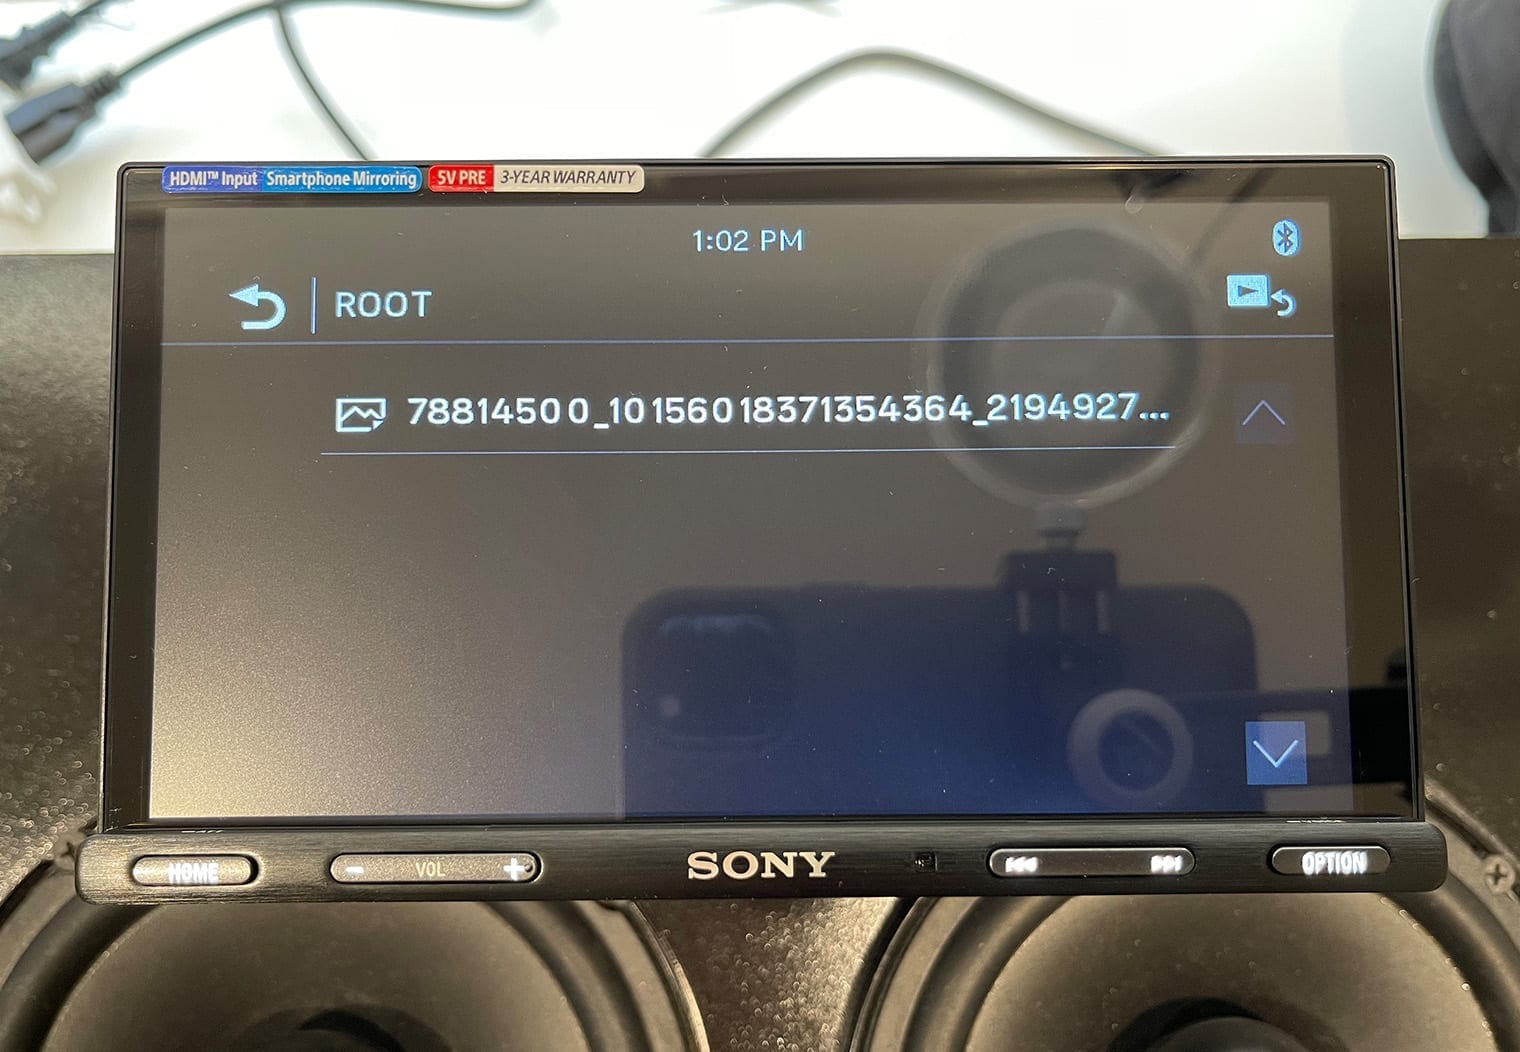 Sony XAV-AX5600 upload image USB